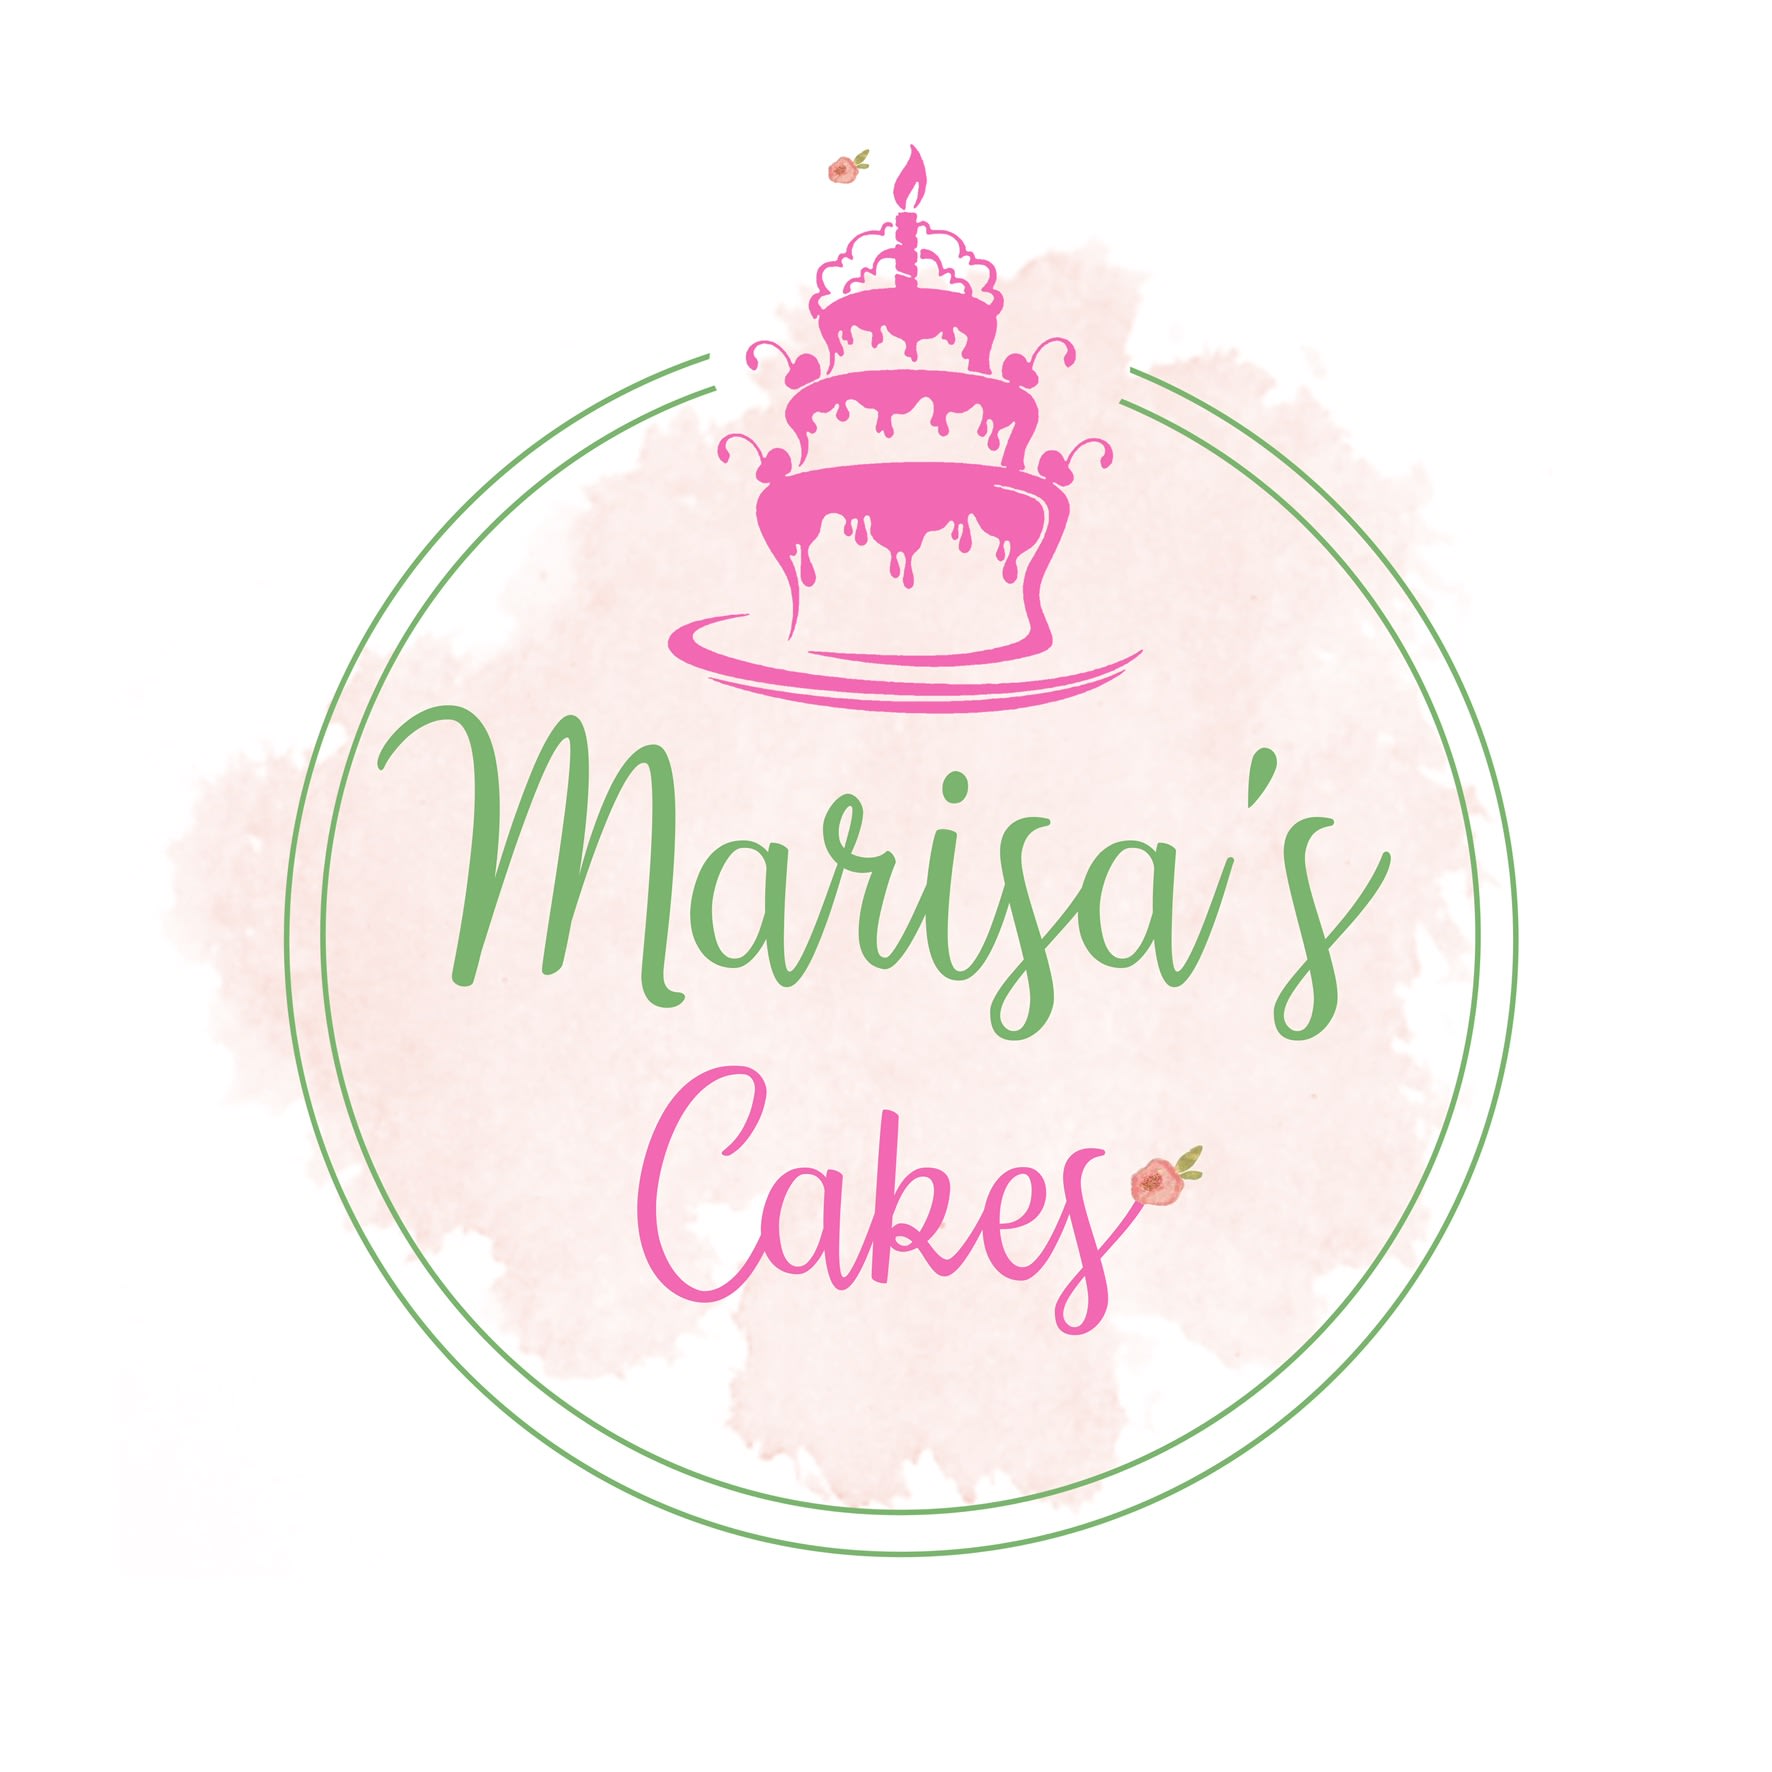 Marisa’s Cakes